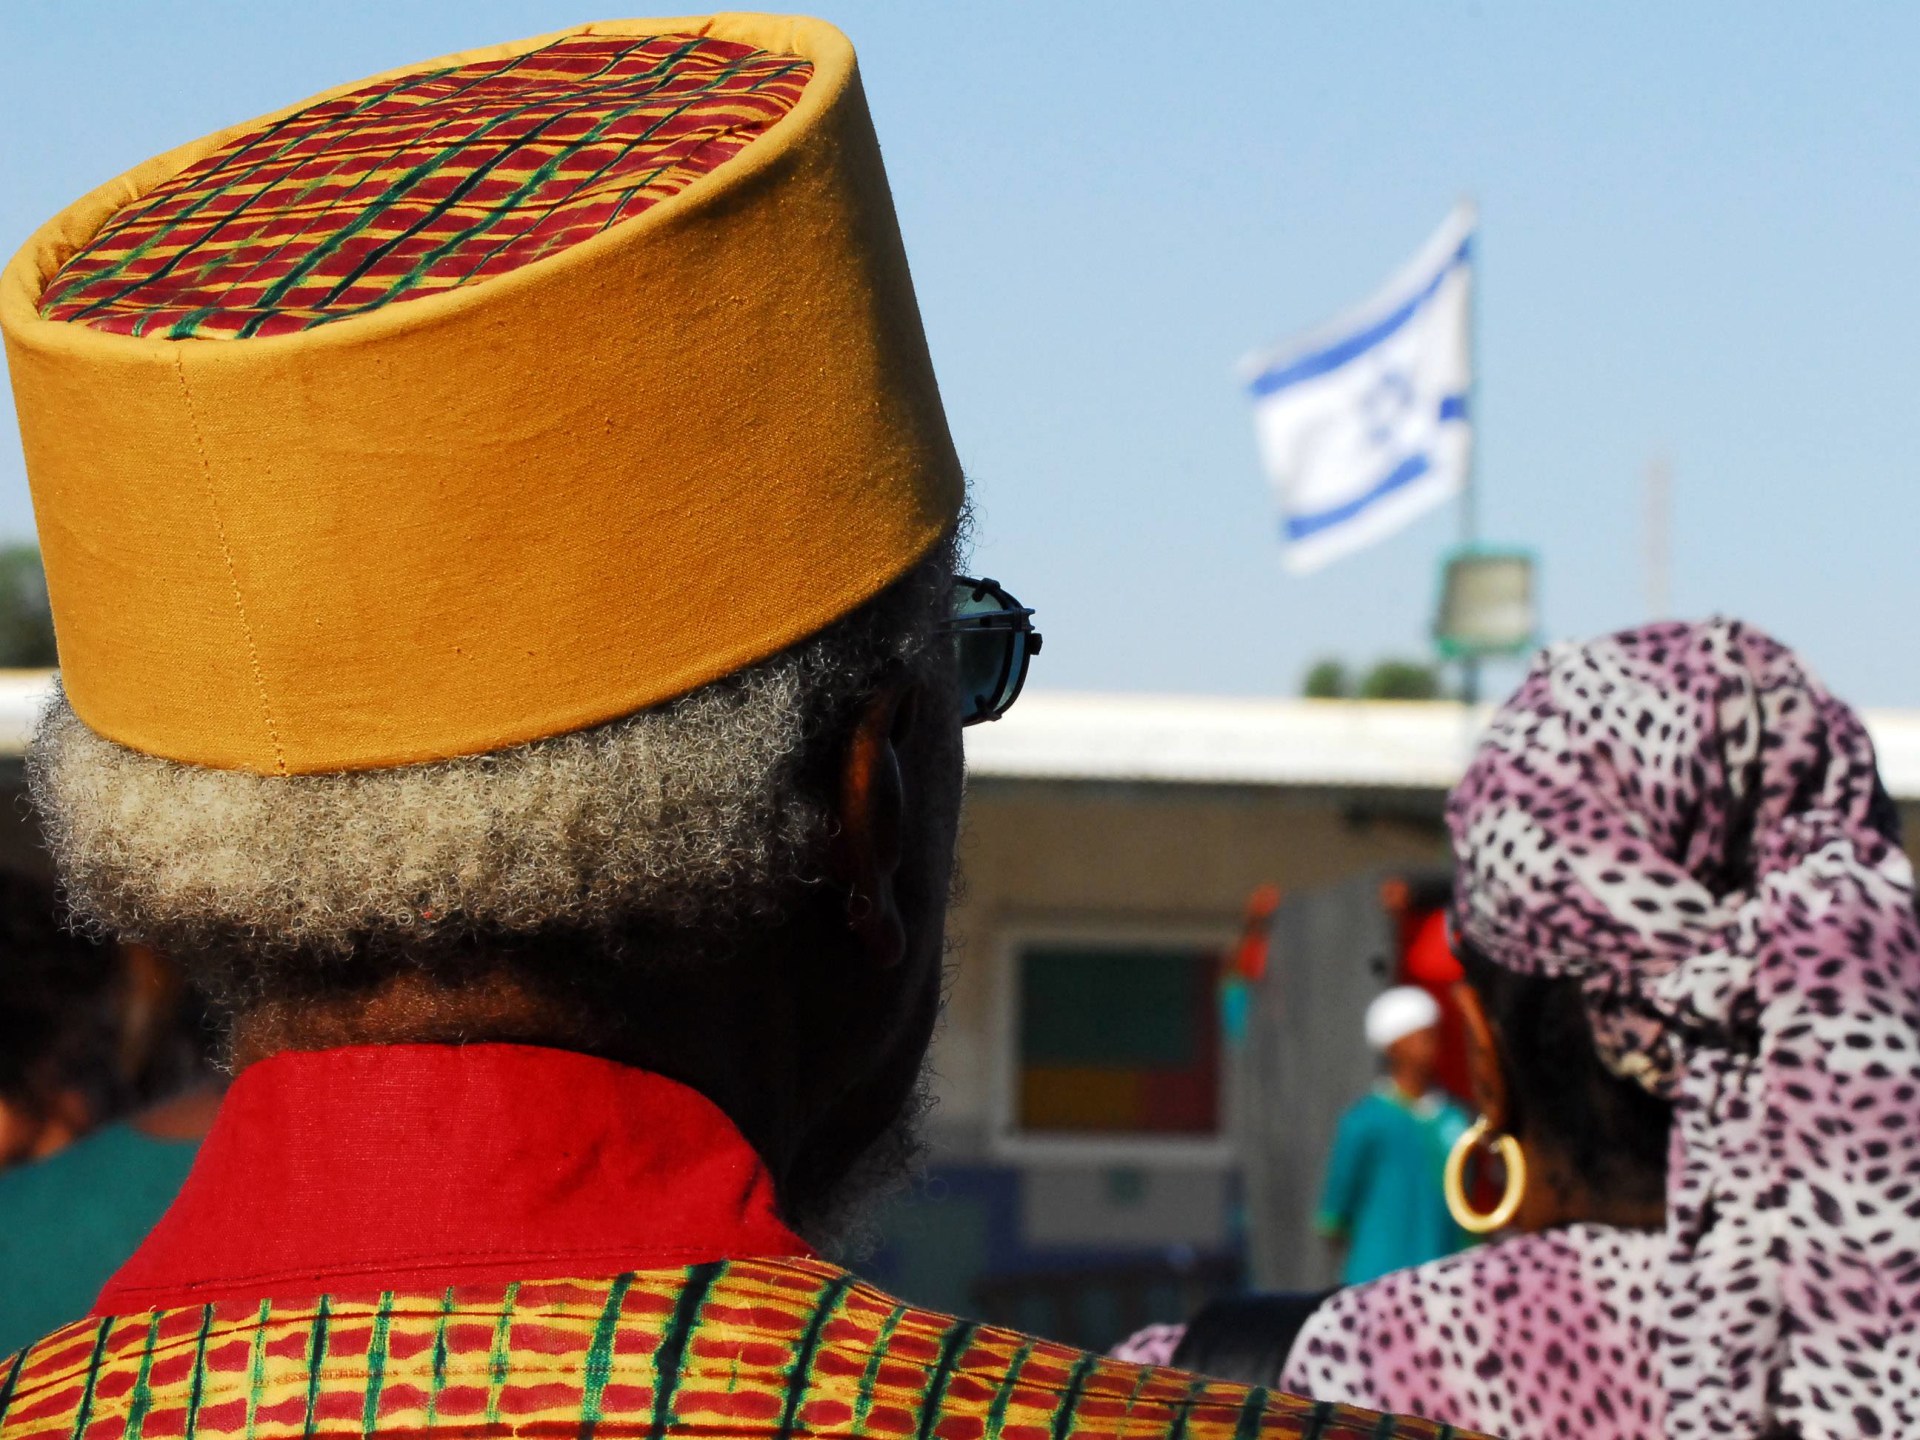 يهود أفريقيا وإعادة تشكيل المواقف نحو إسرائيل | سياسة – البوكس نيوز